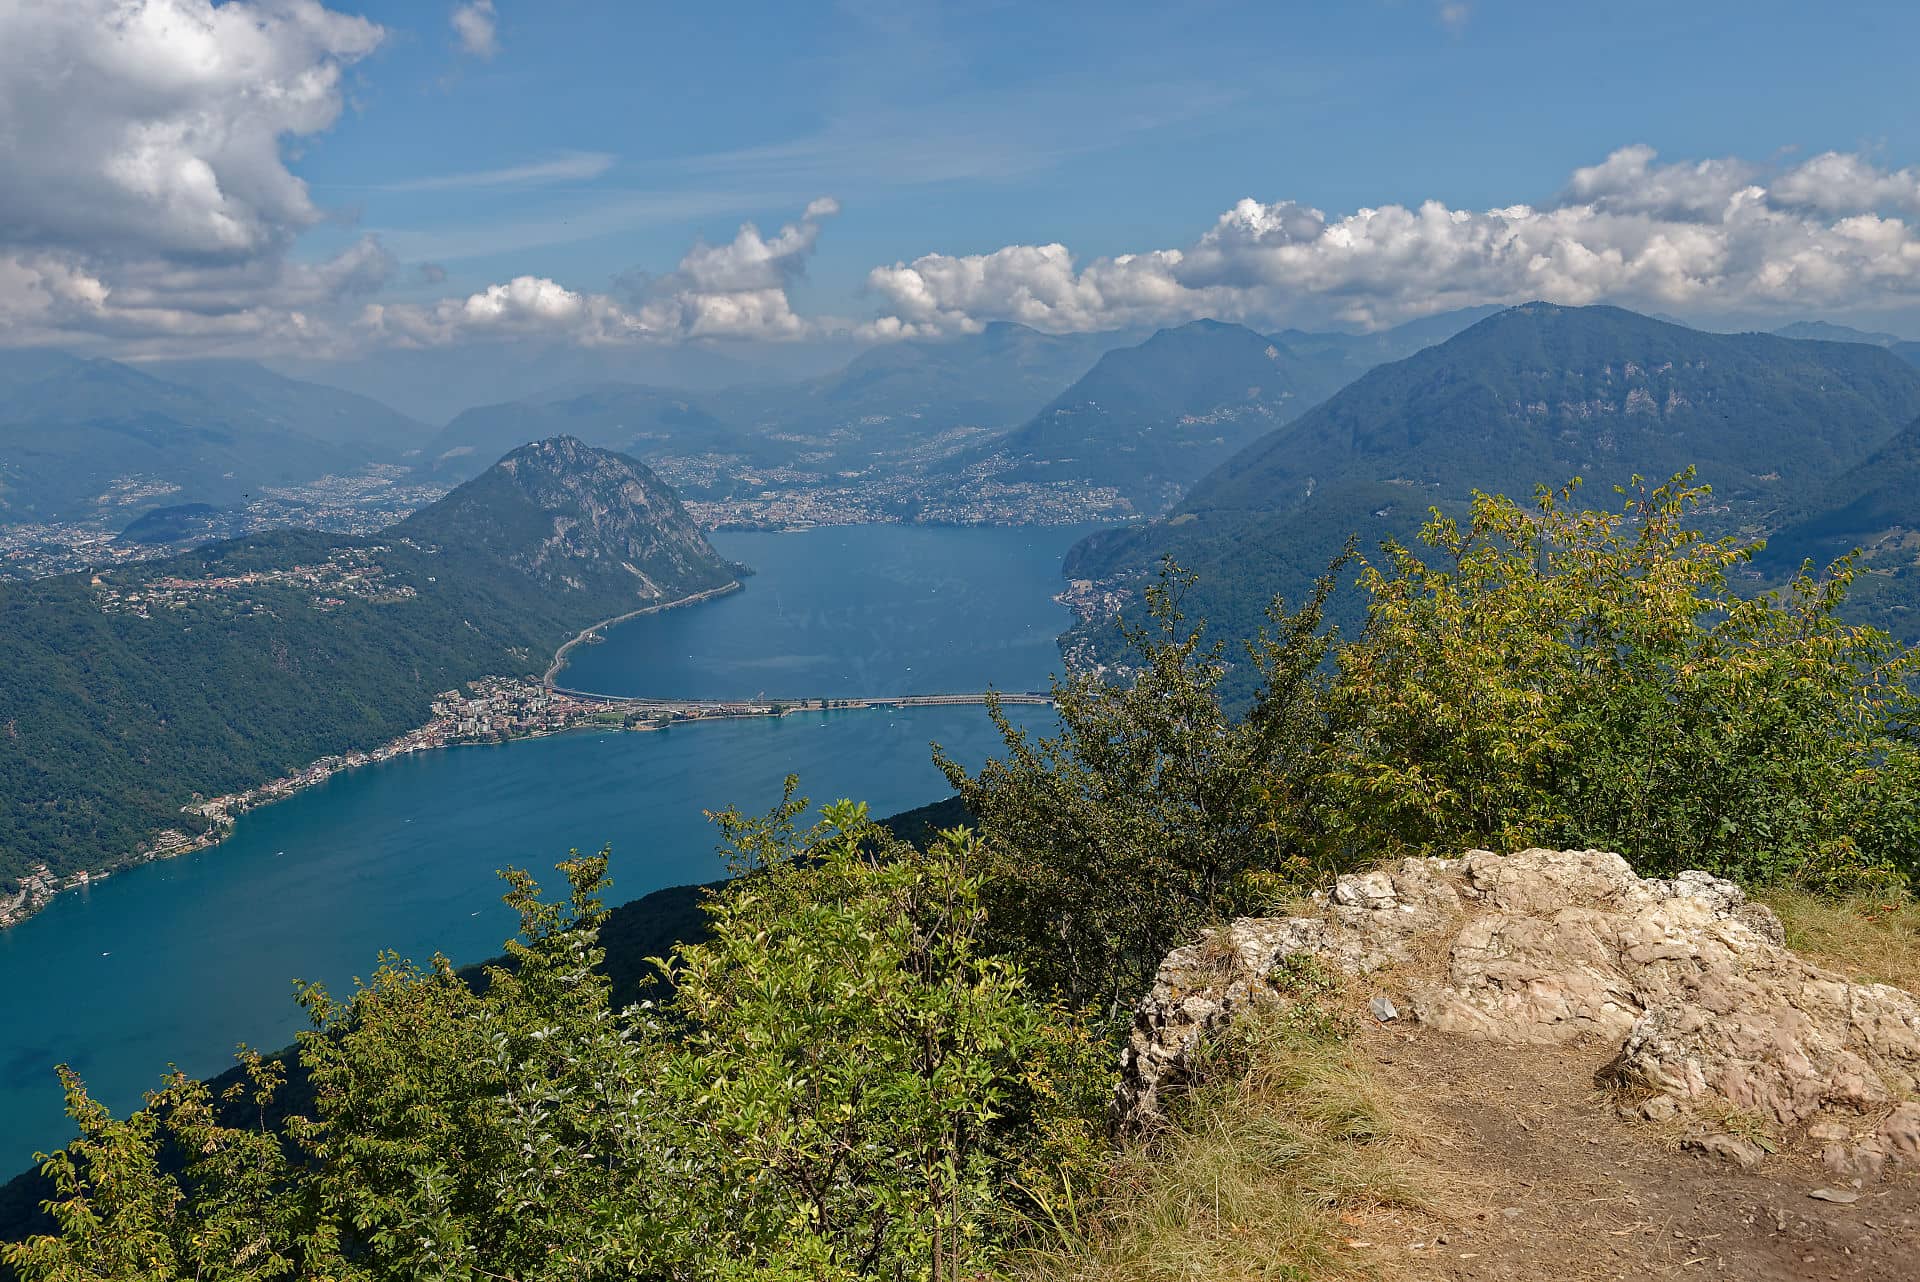 Vue du lac de Lugano depuis le sommet du Monte San Giorgio